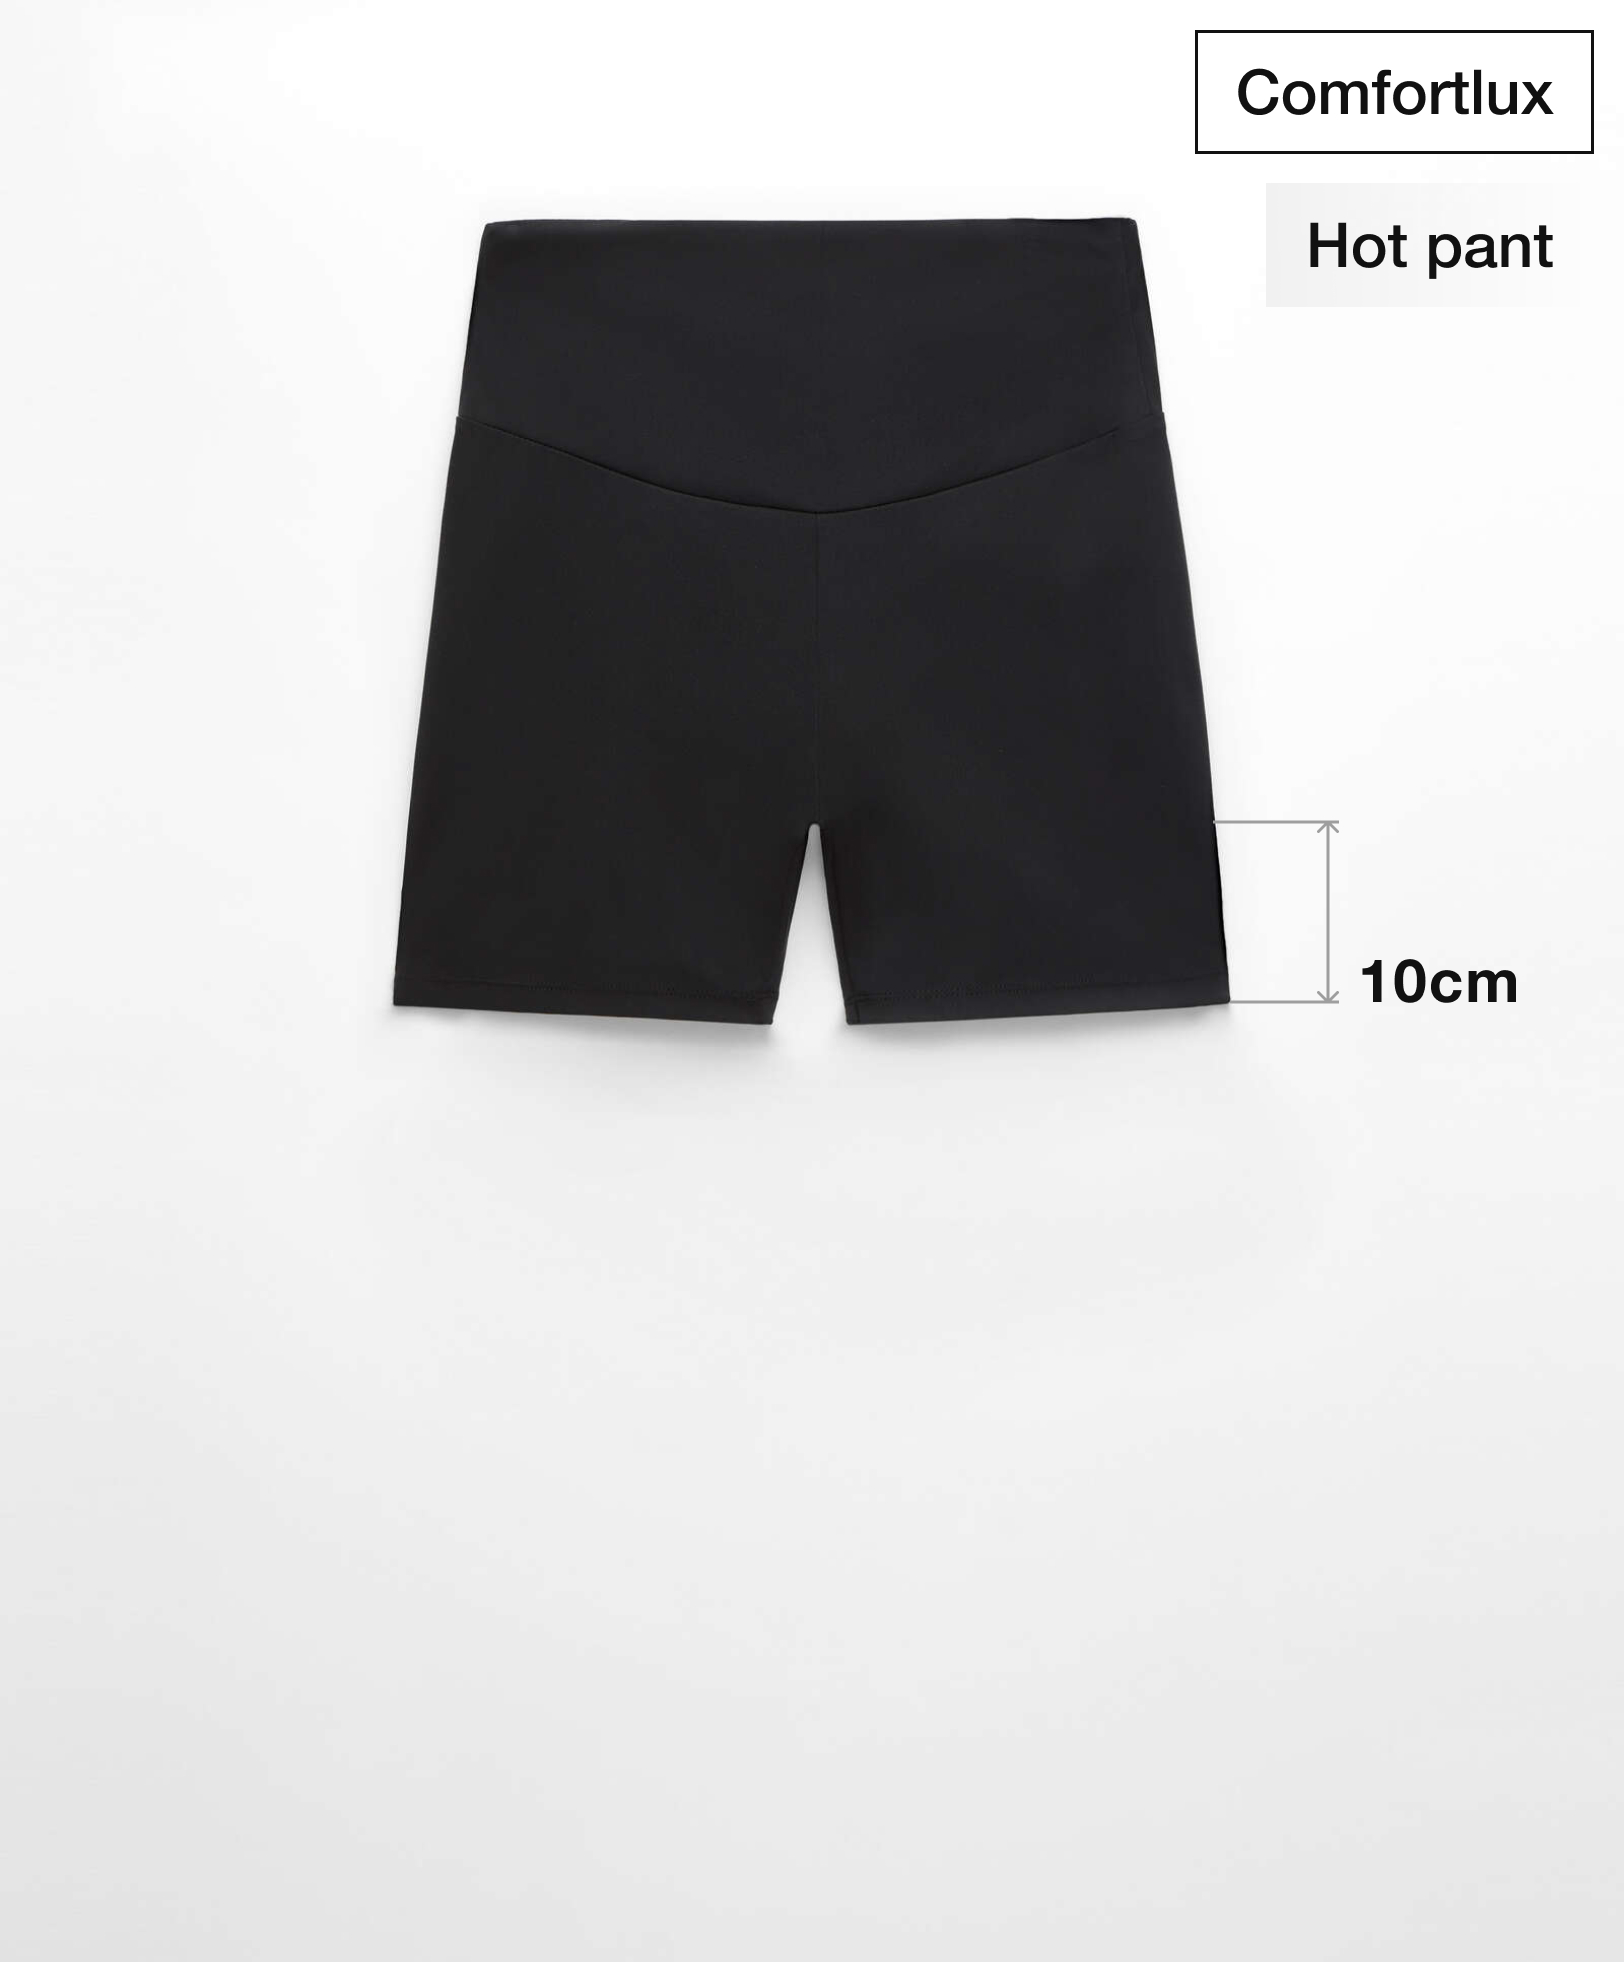 Hot pants high rise comfortlux 10 cm